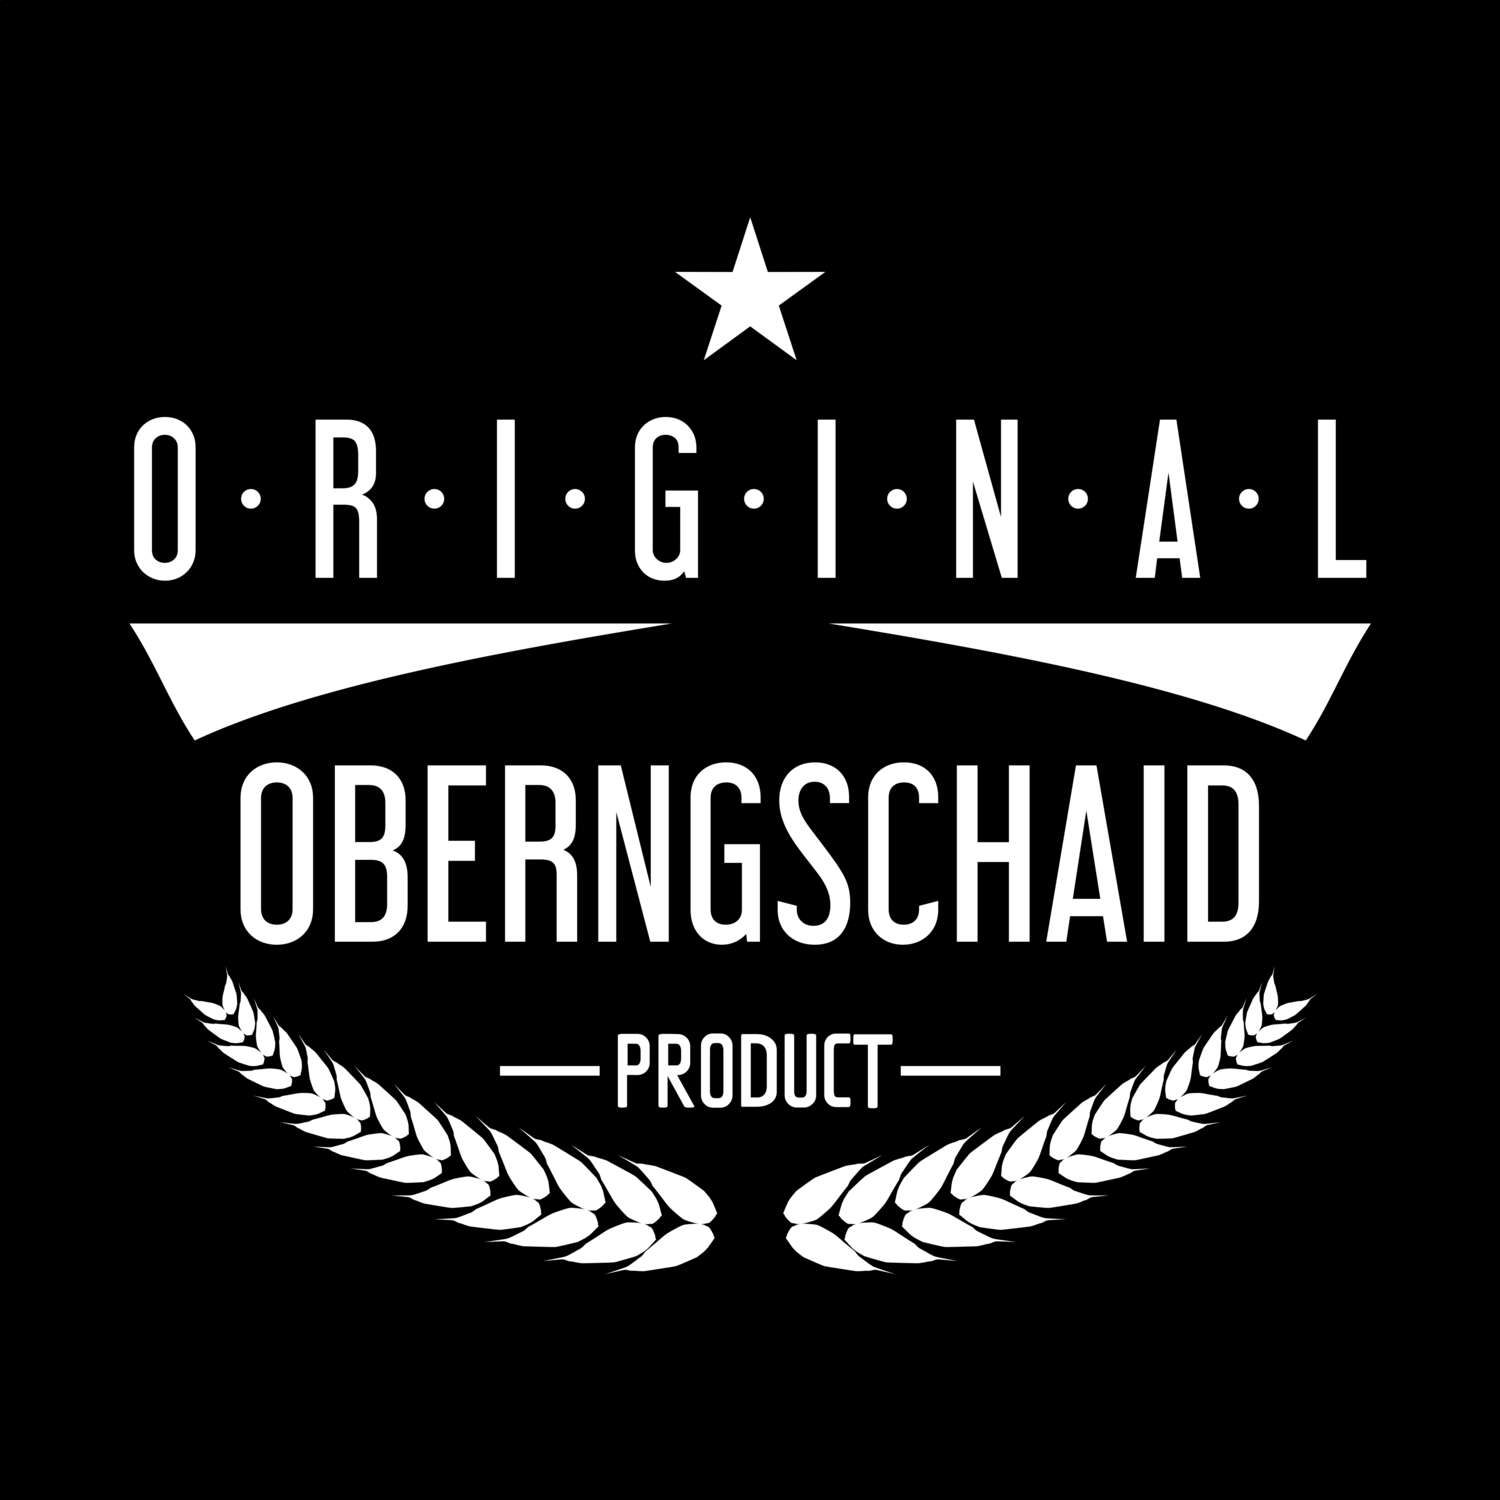 Oberngschaid T-Shirt »Original Product«